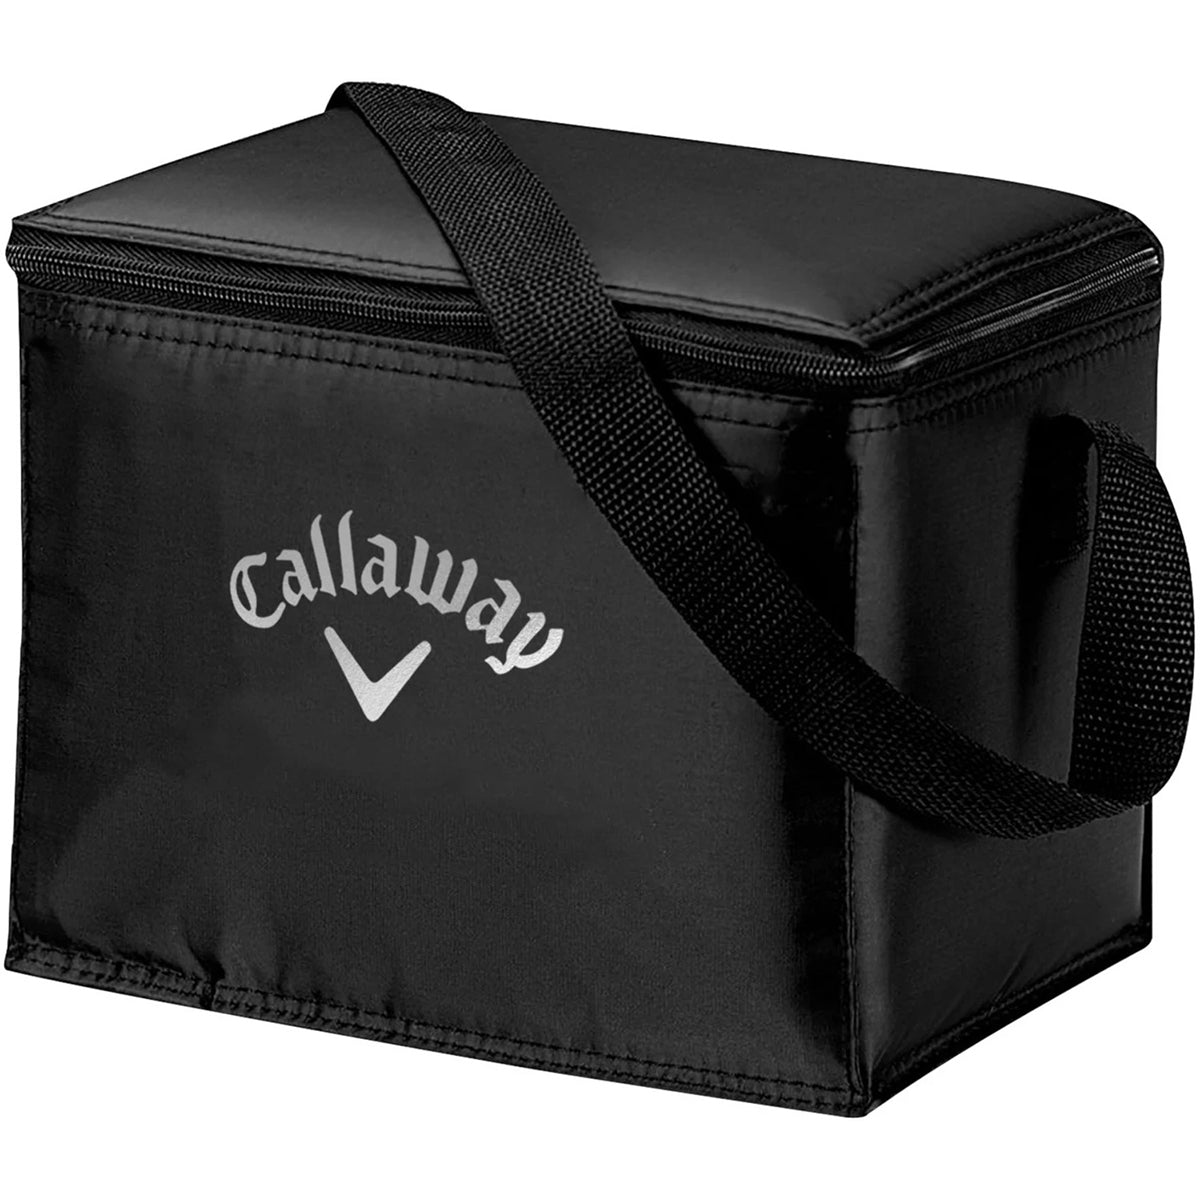 Callaway Soft Cooler Bag Golf Gift Set Callaway